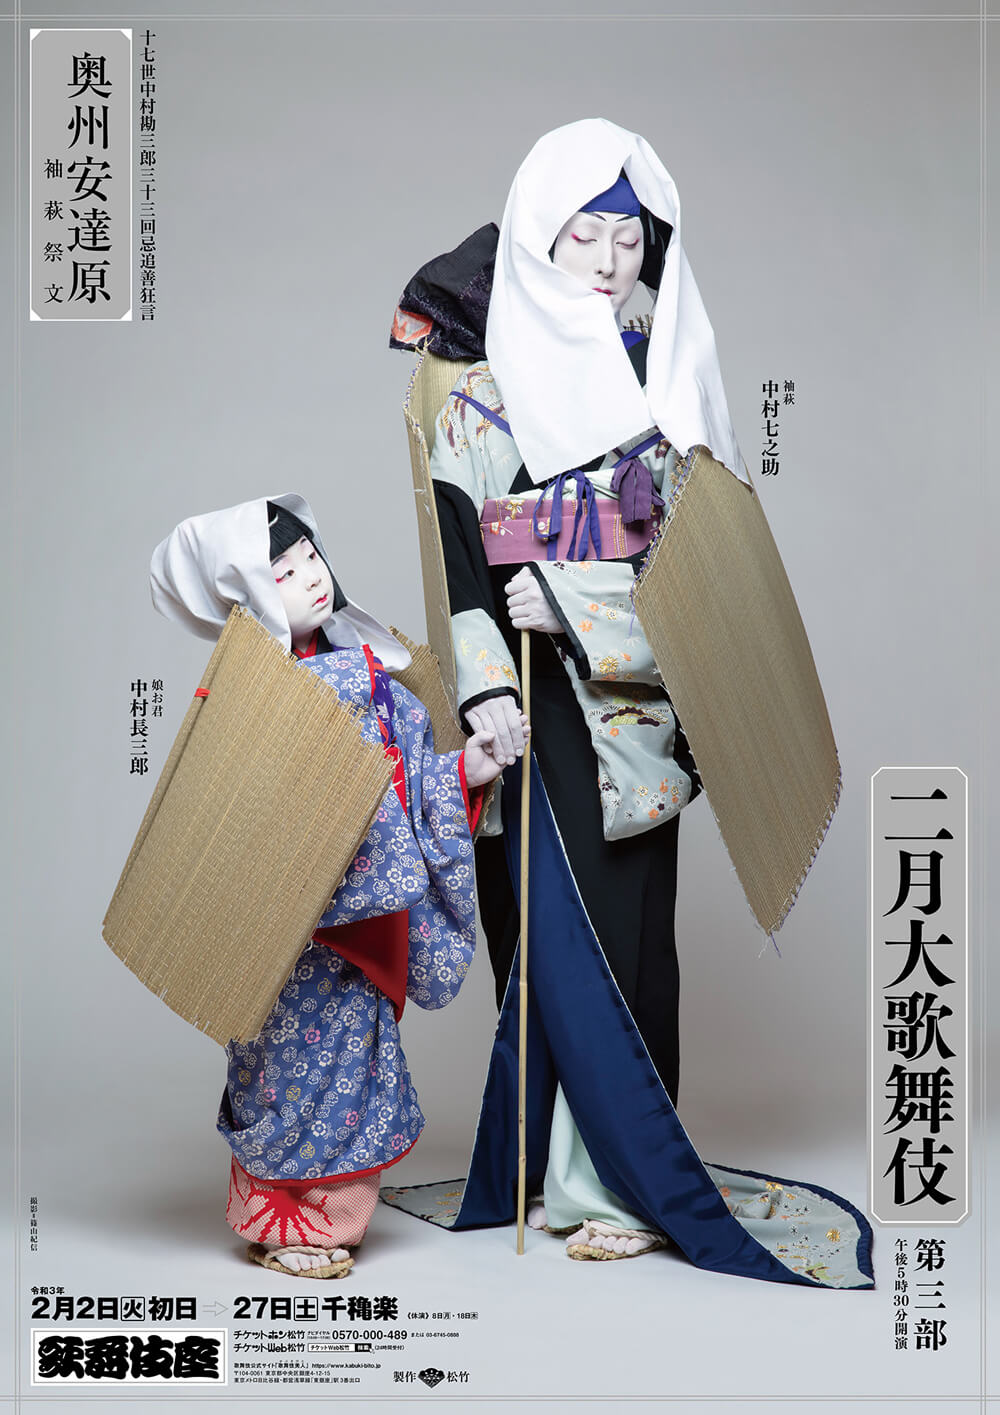 歌舞伎座「二月大歌舞伎」特別ポスター公開